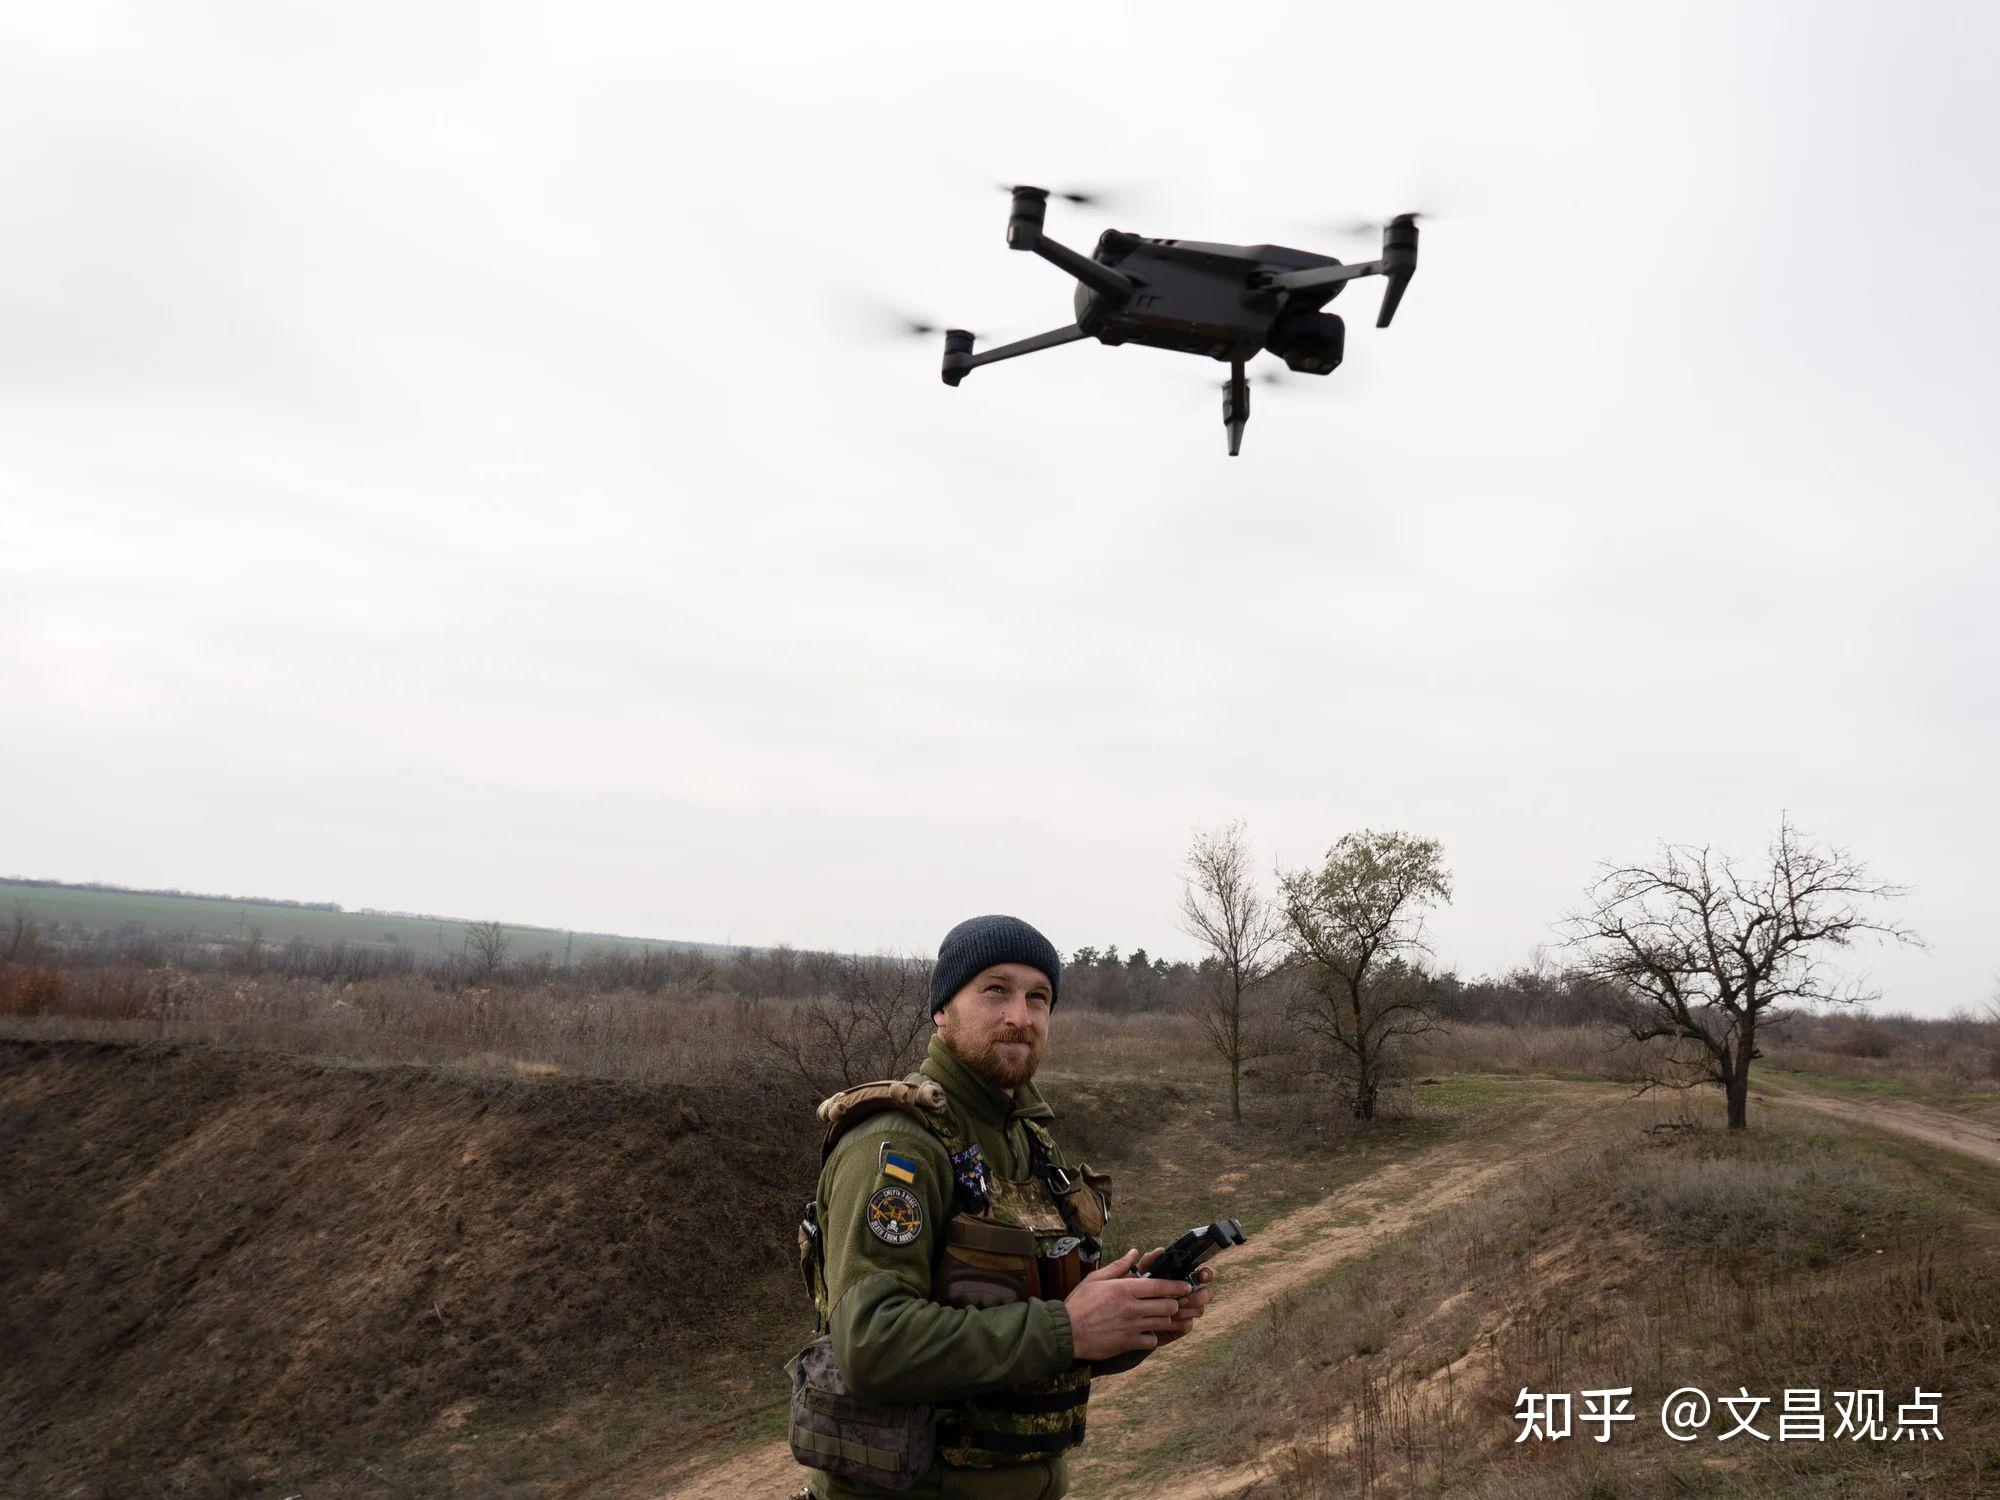 俄东部军区无人机被纳入统一军队指挥系统 - 2018年11月29日, 俄罗斯卫星通讯社